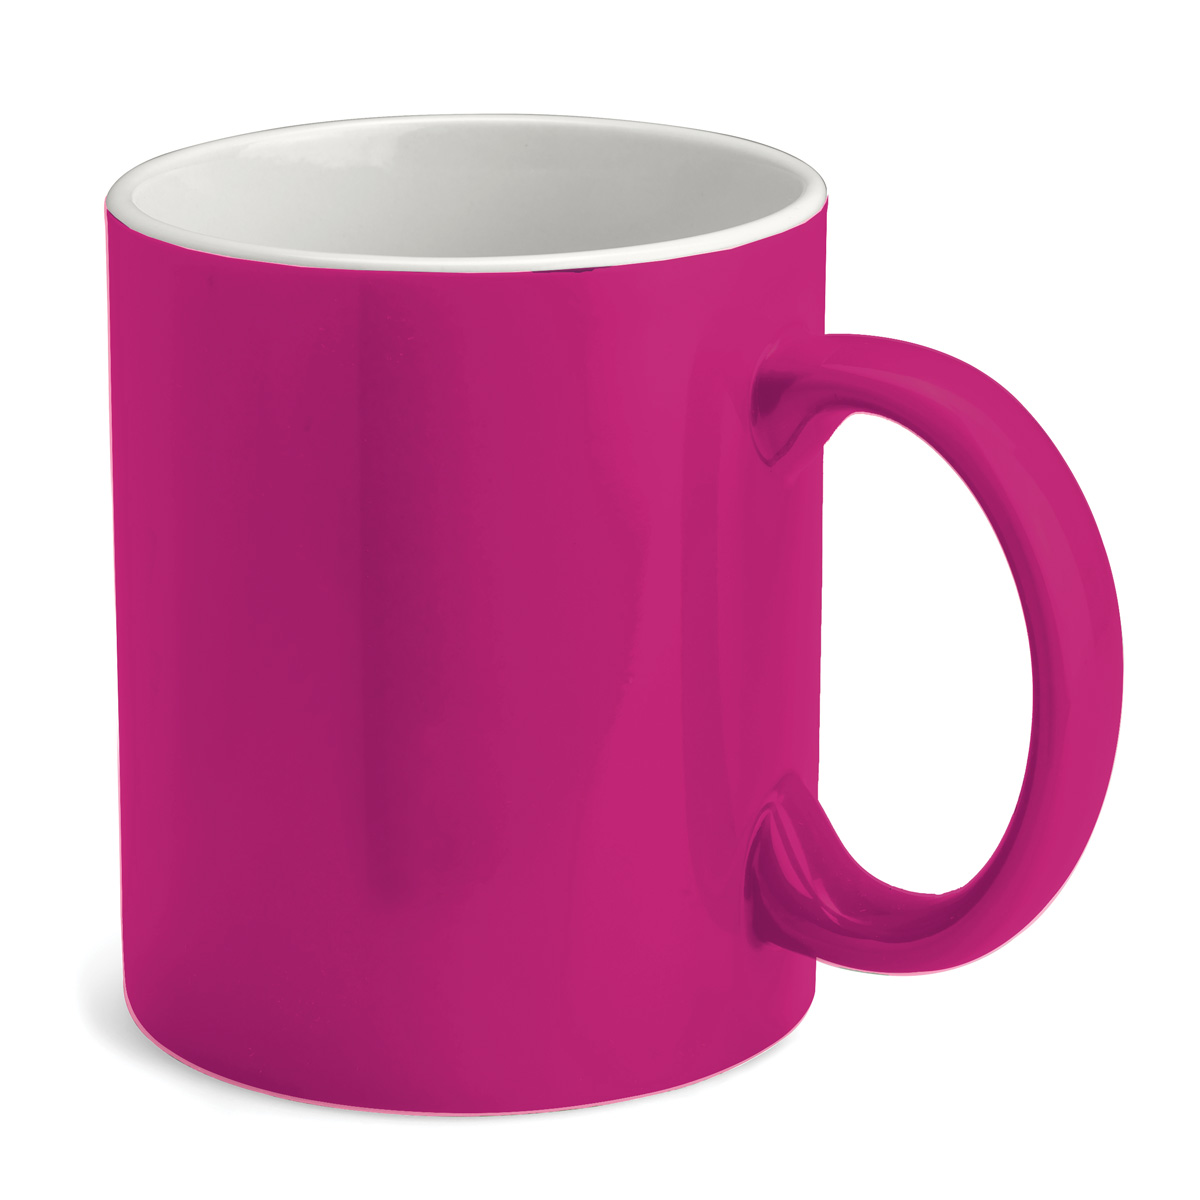 2 Tone Ceramic Mug Product Image